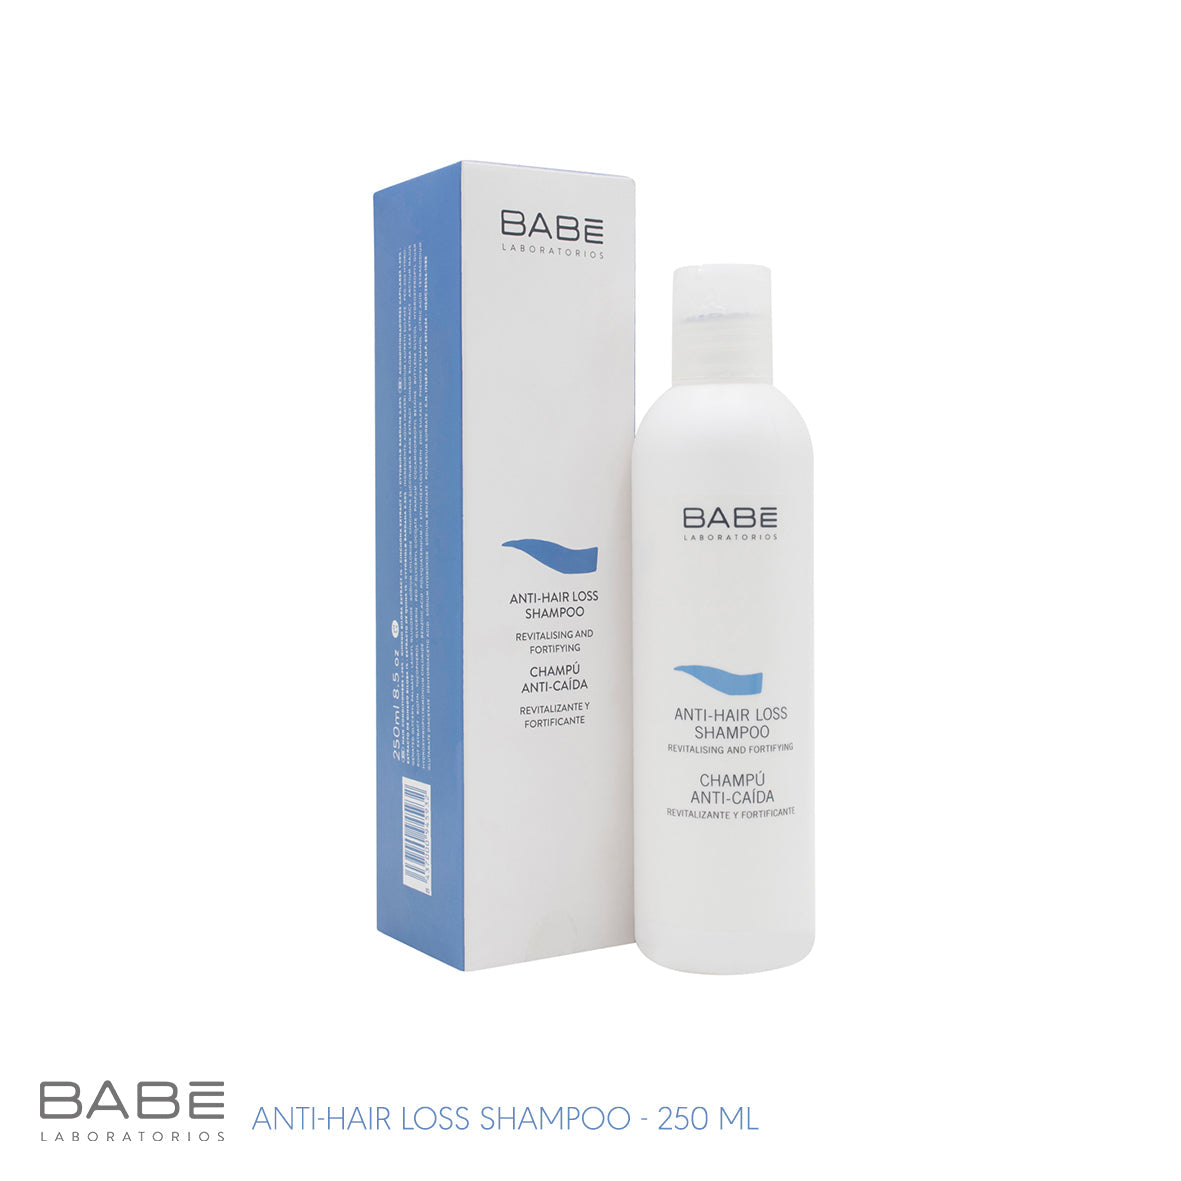 Babe Anti-Hair Loss Shampoo